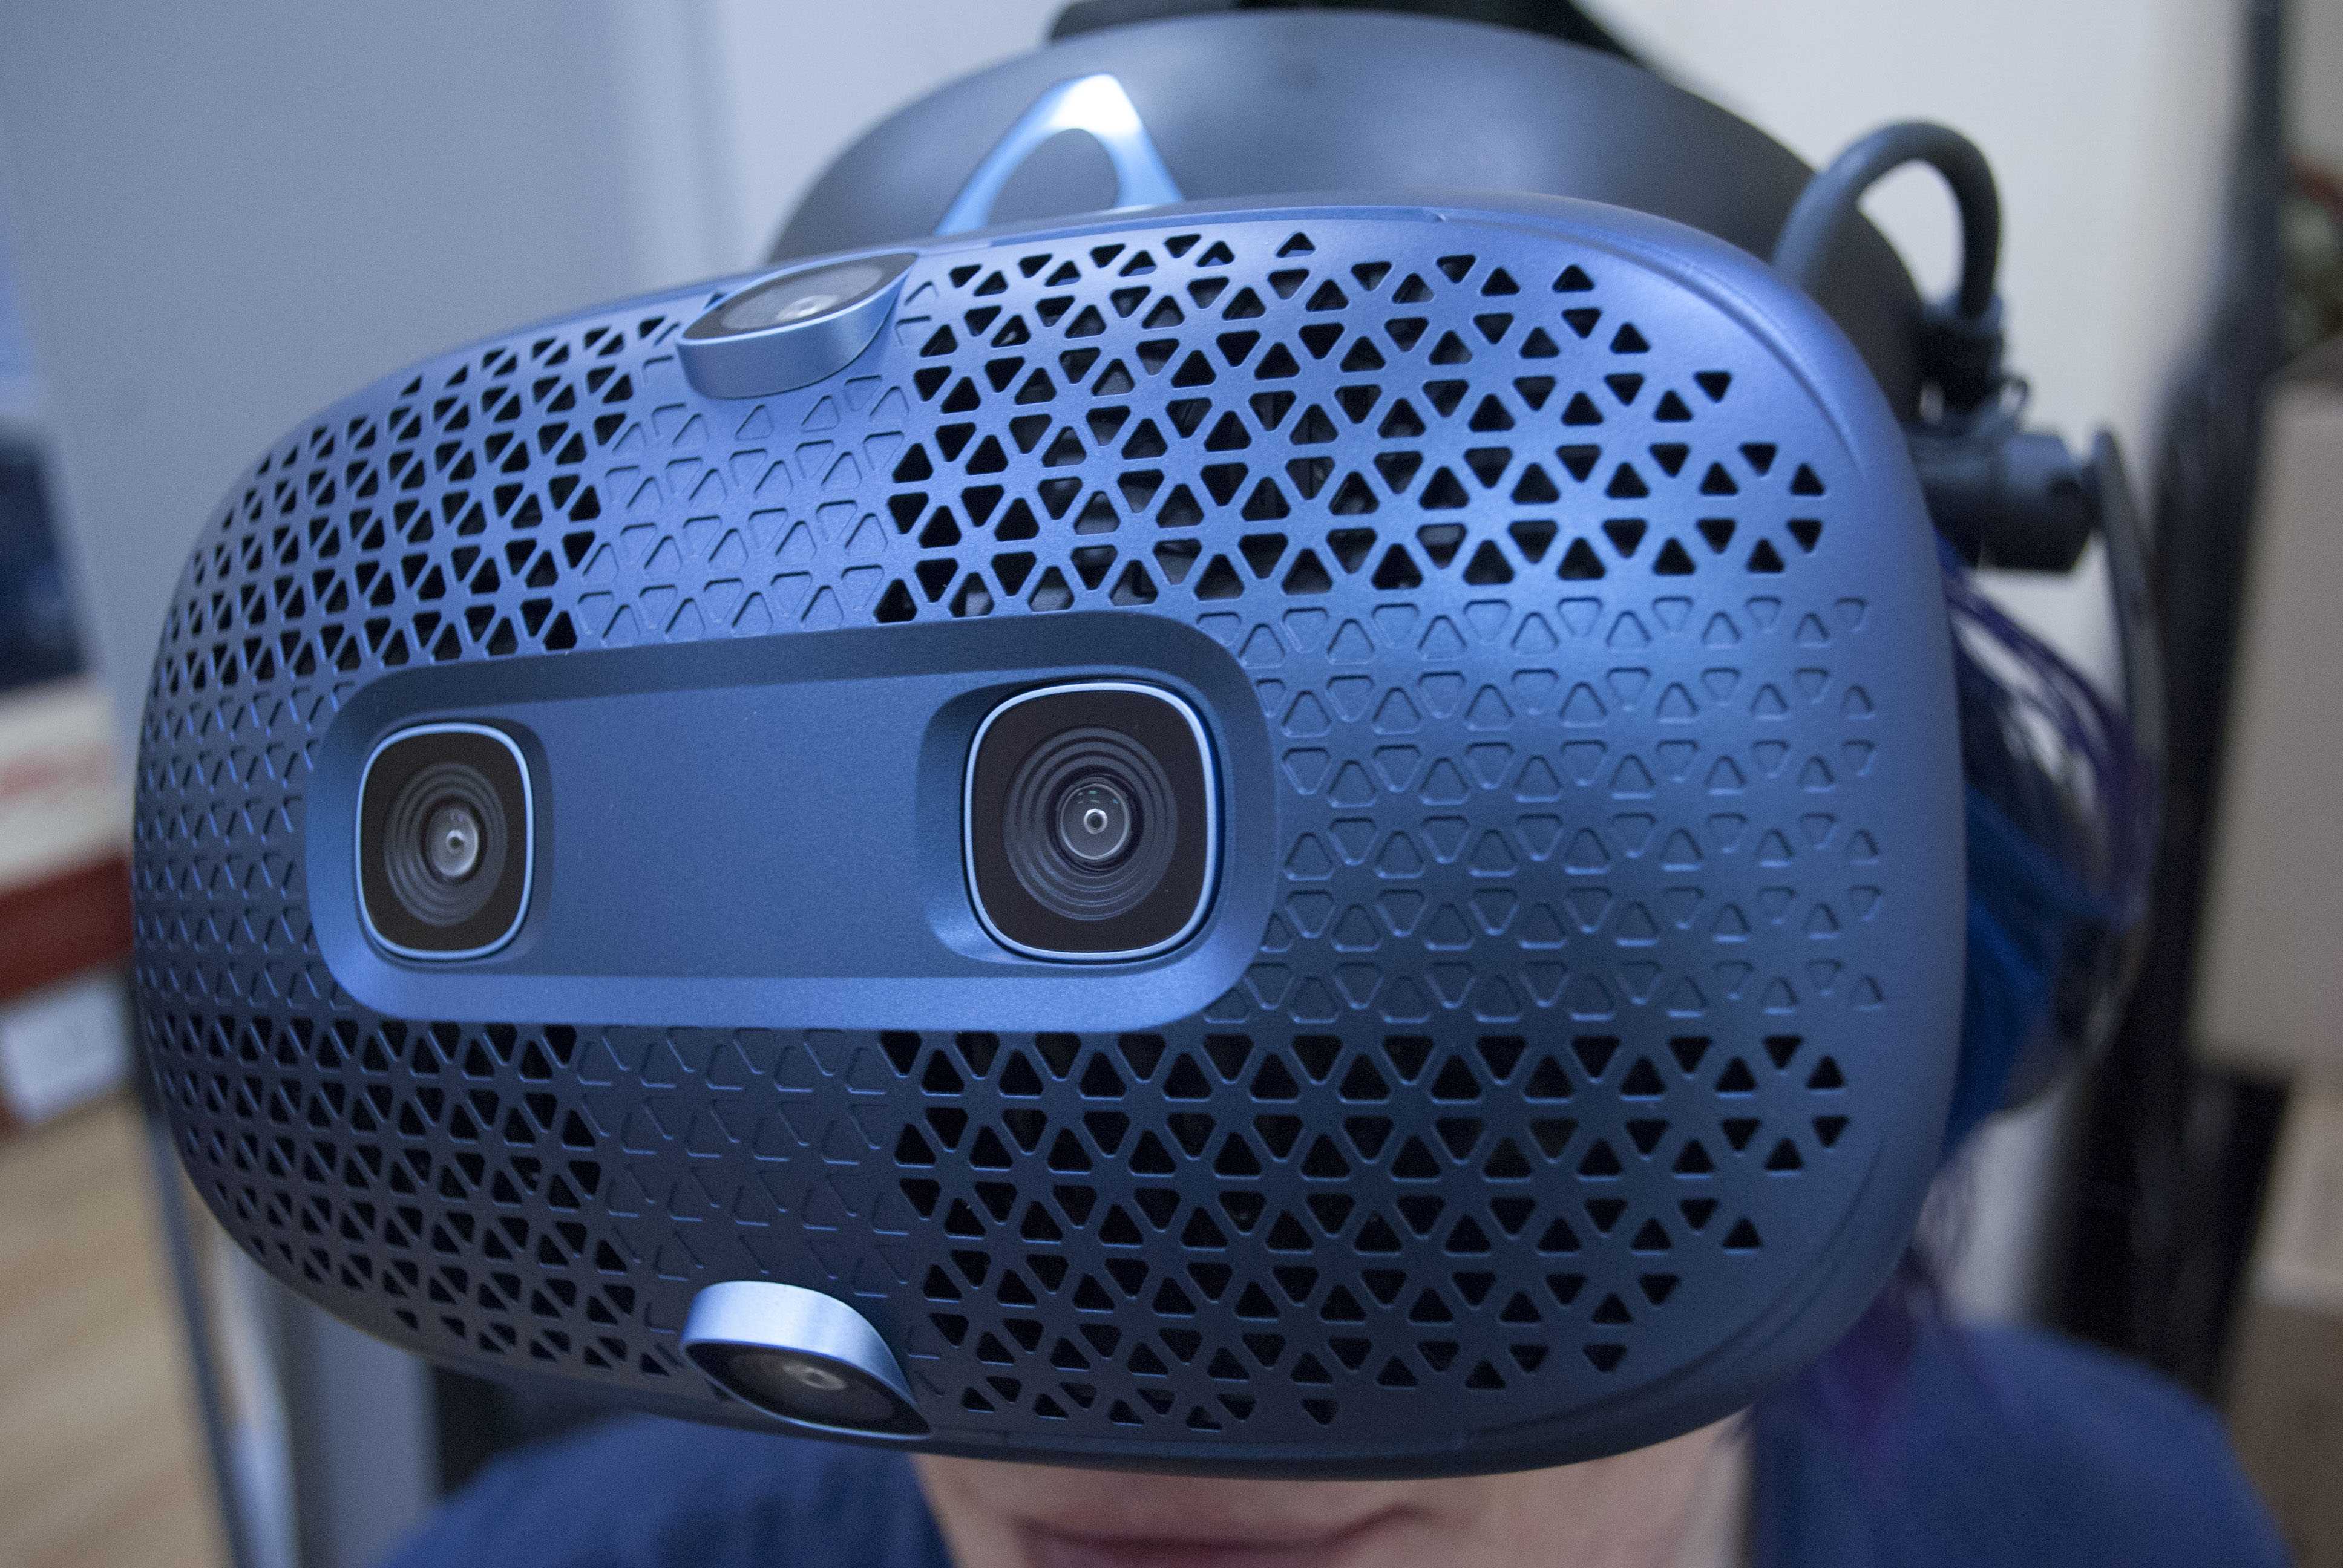 Htc vive: обзор очков виртуальной реальности, как подключить и настроить vr шлем